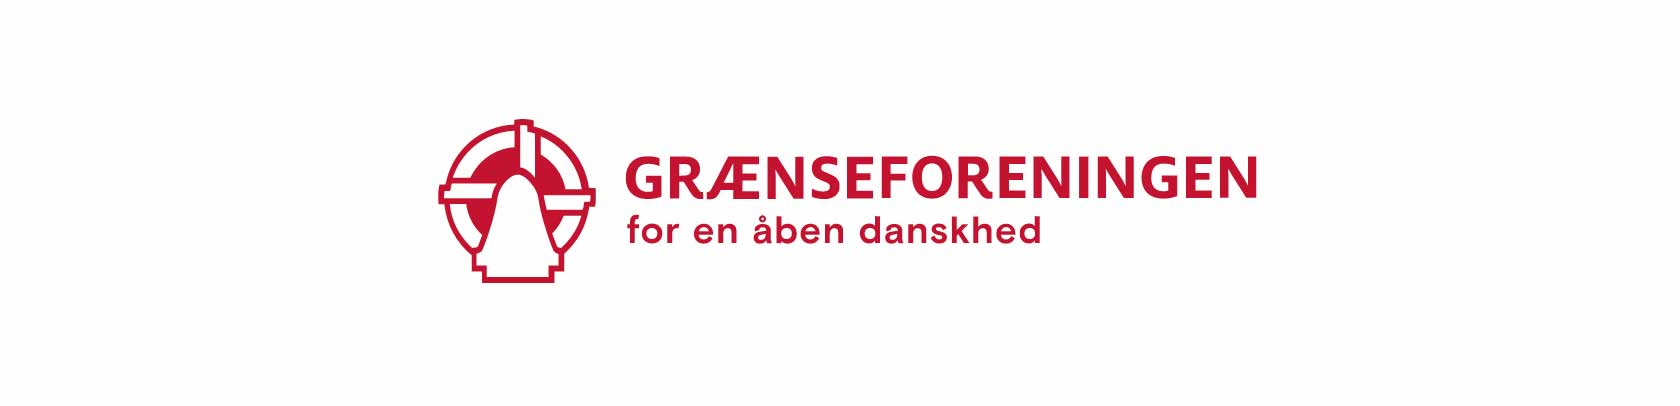 Sønderjysk Gærnseforening for Dianalund Stenlille